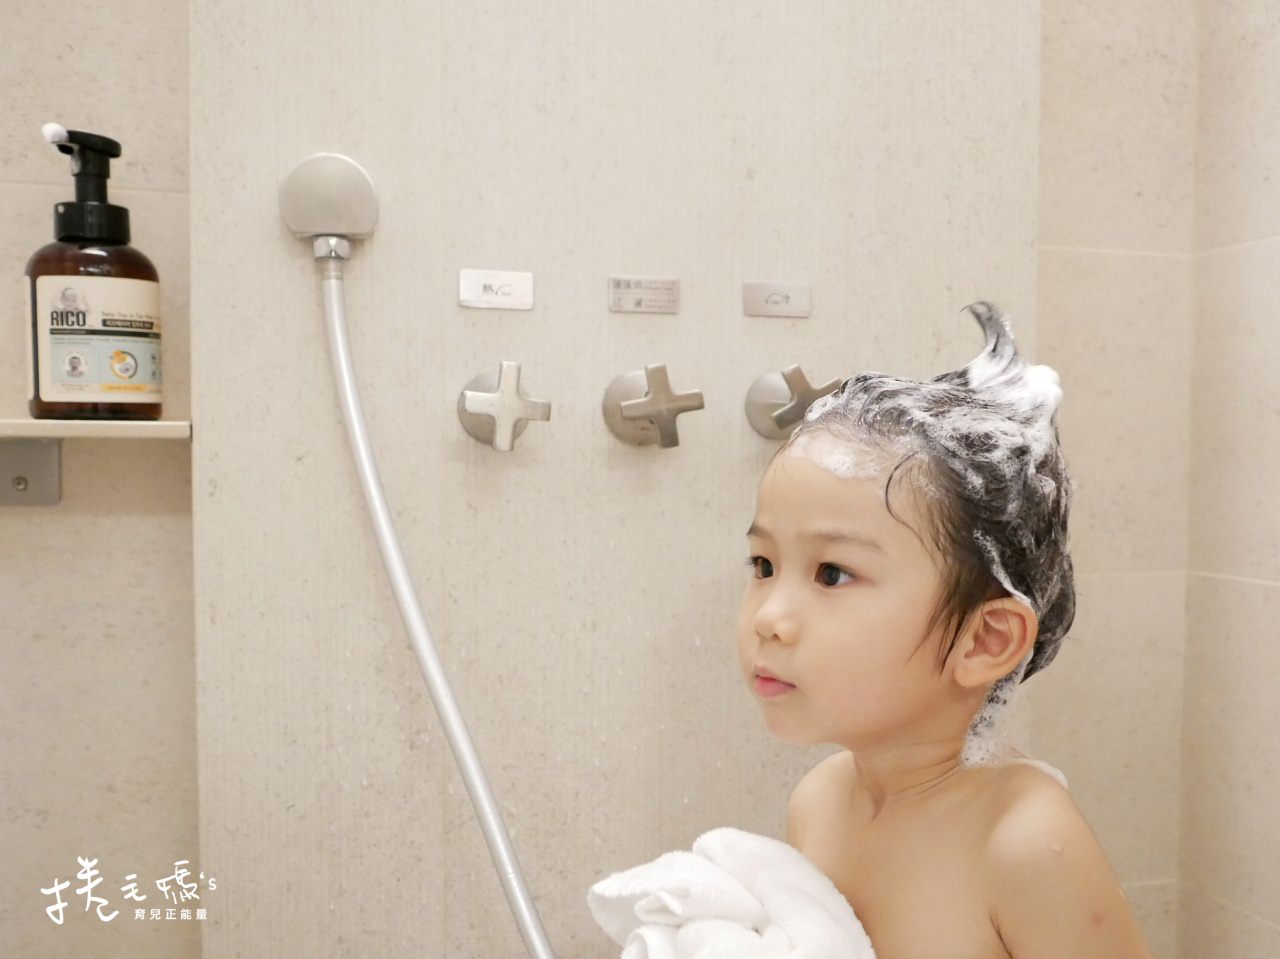 嬰兒濕紙巾推薦 好用濕紙巾 韓國濕紙巾 厚濕紙巾 待產包P1020497